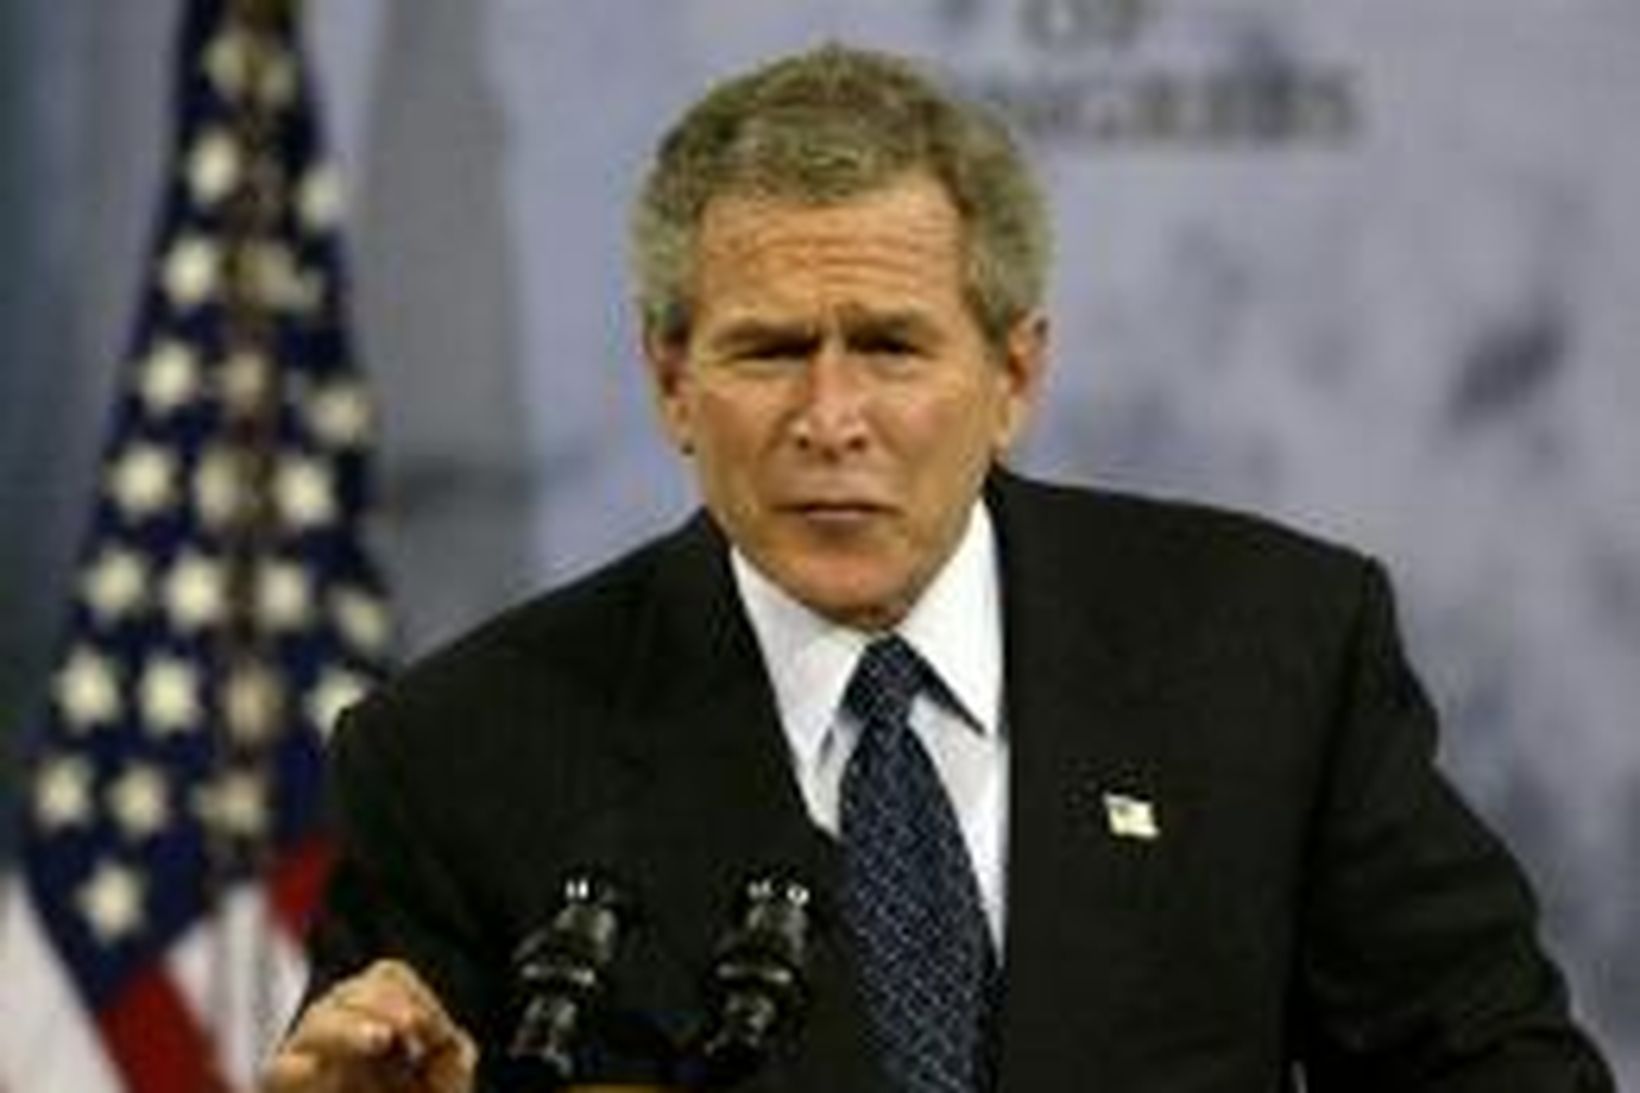 George W. Bush, forseti Bandaríkjanna, vill ekki að samkynhneigðum verði …